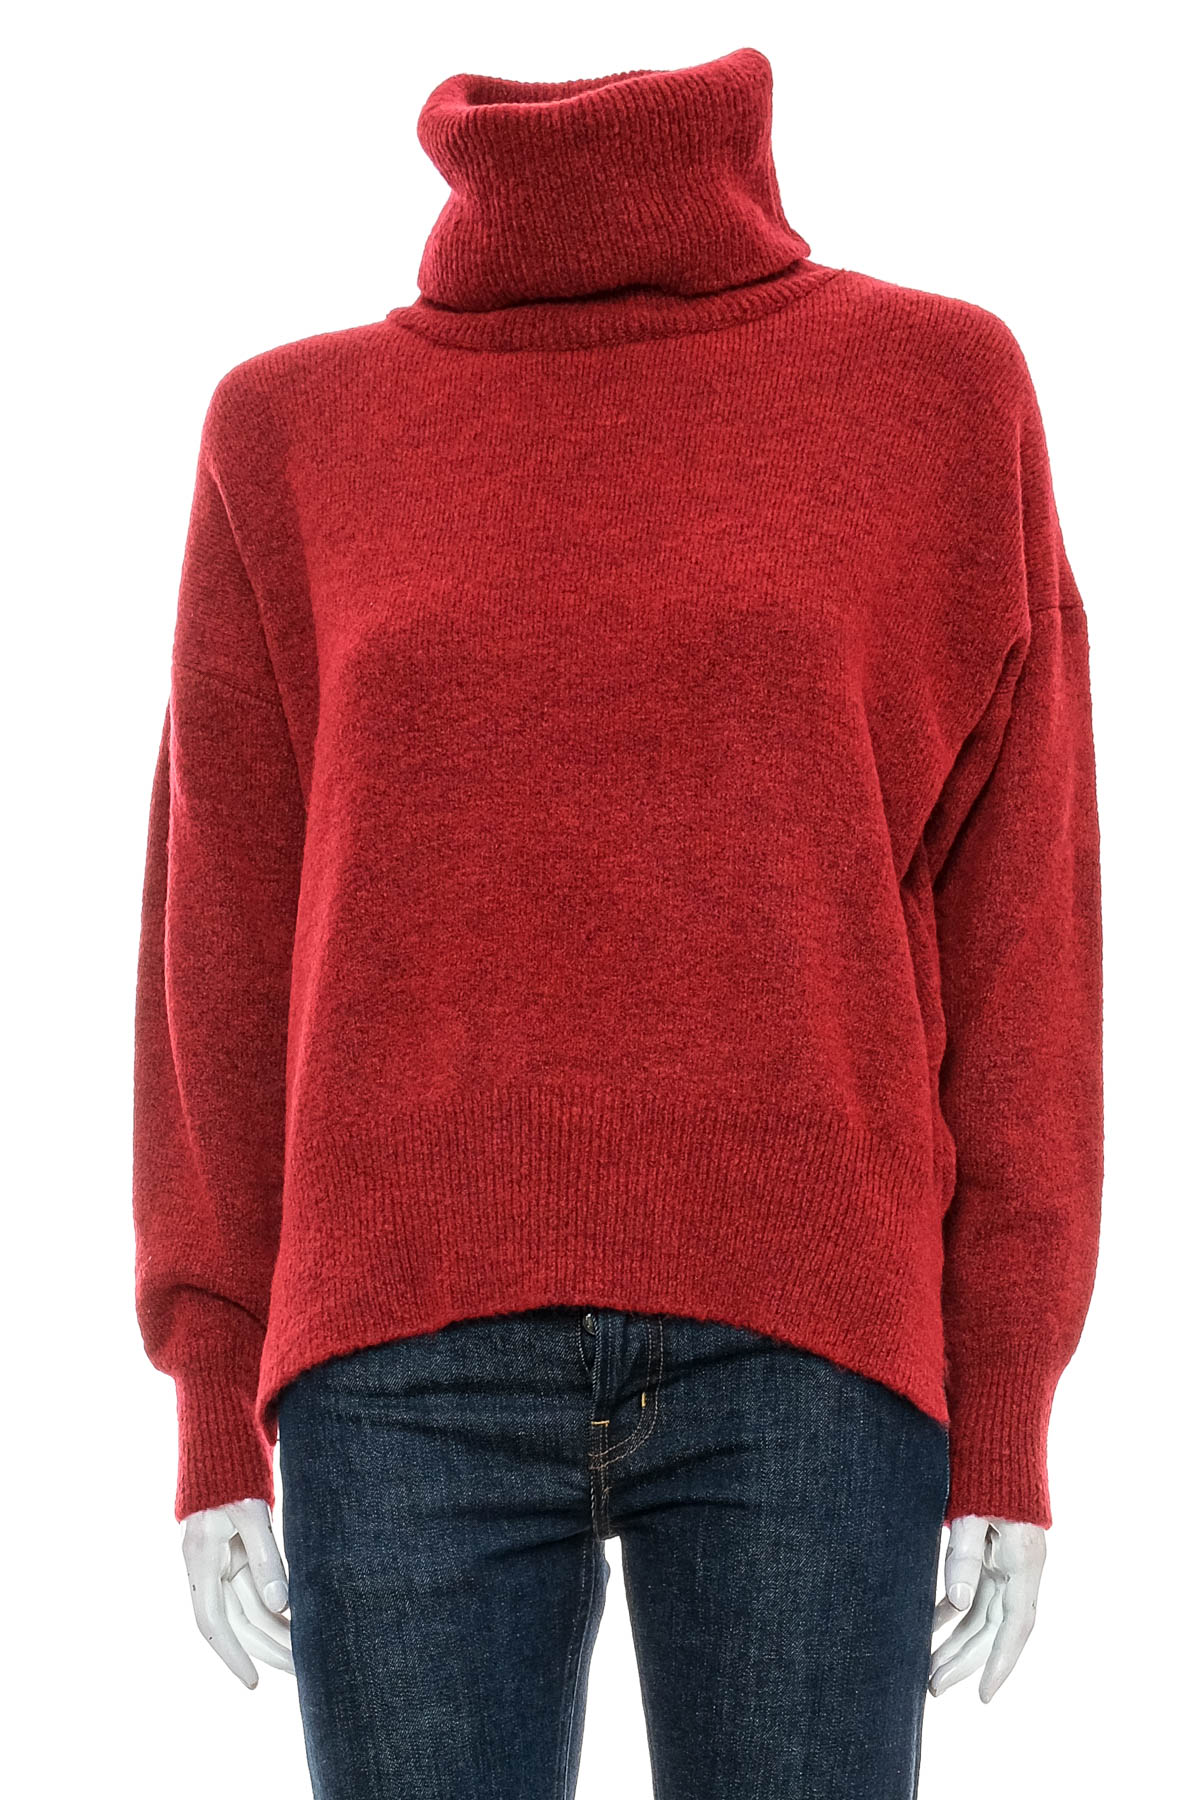 Women's sweater - TRENDYOL - 0